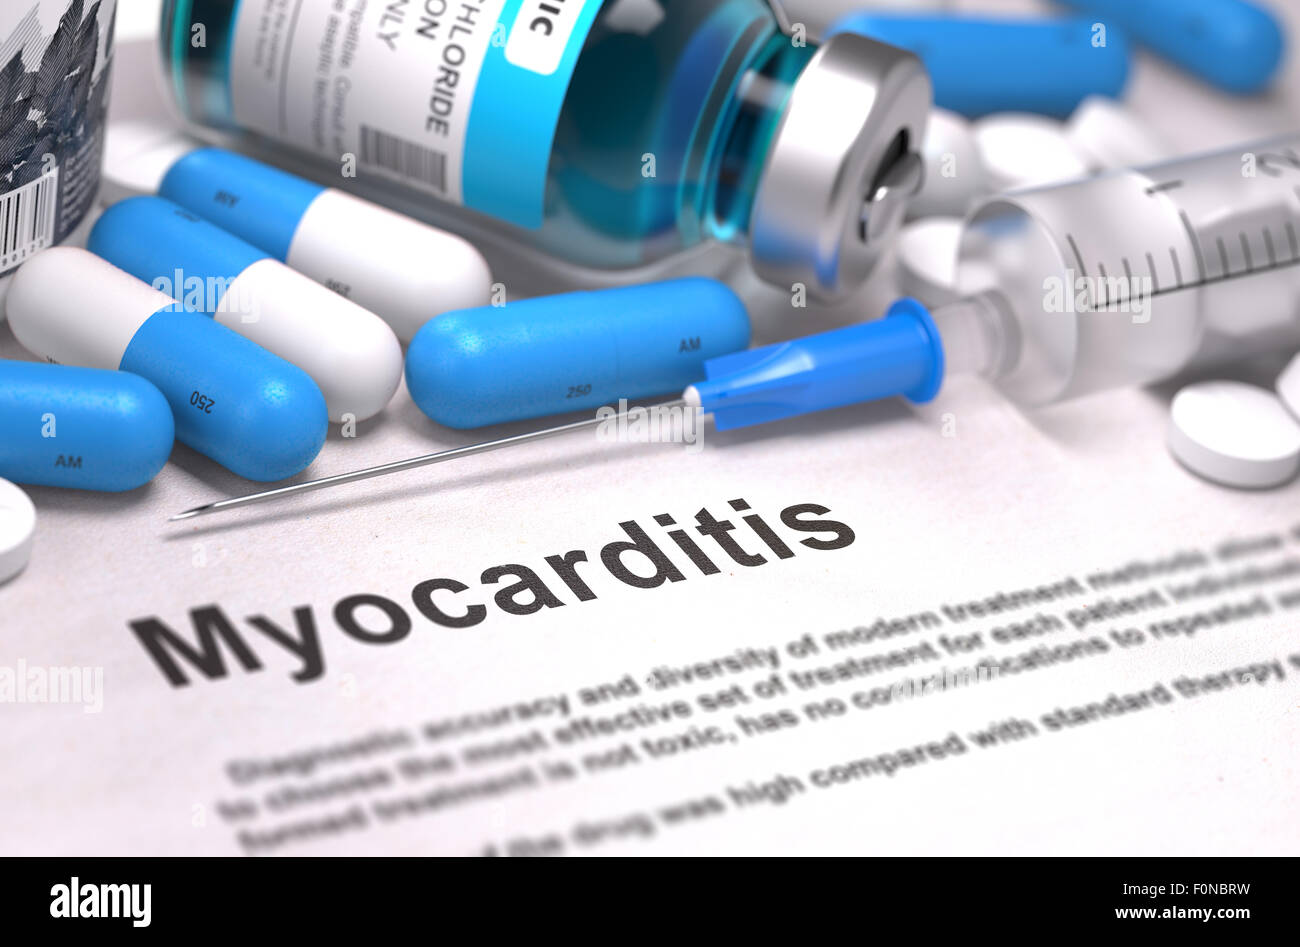 Diagnosis - Myocarditis. Medical Concept. Stock Photo